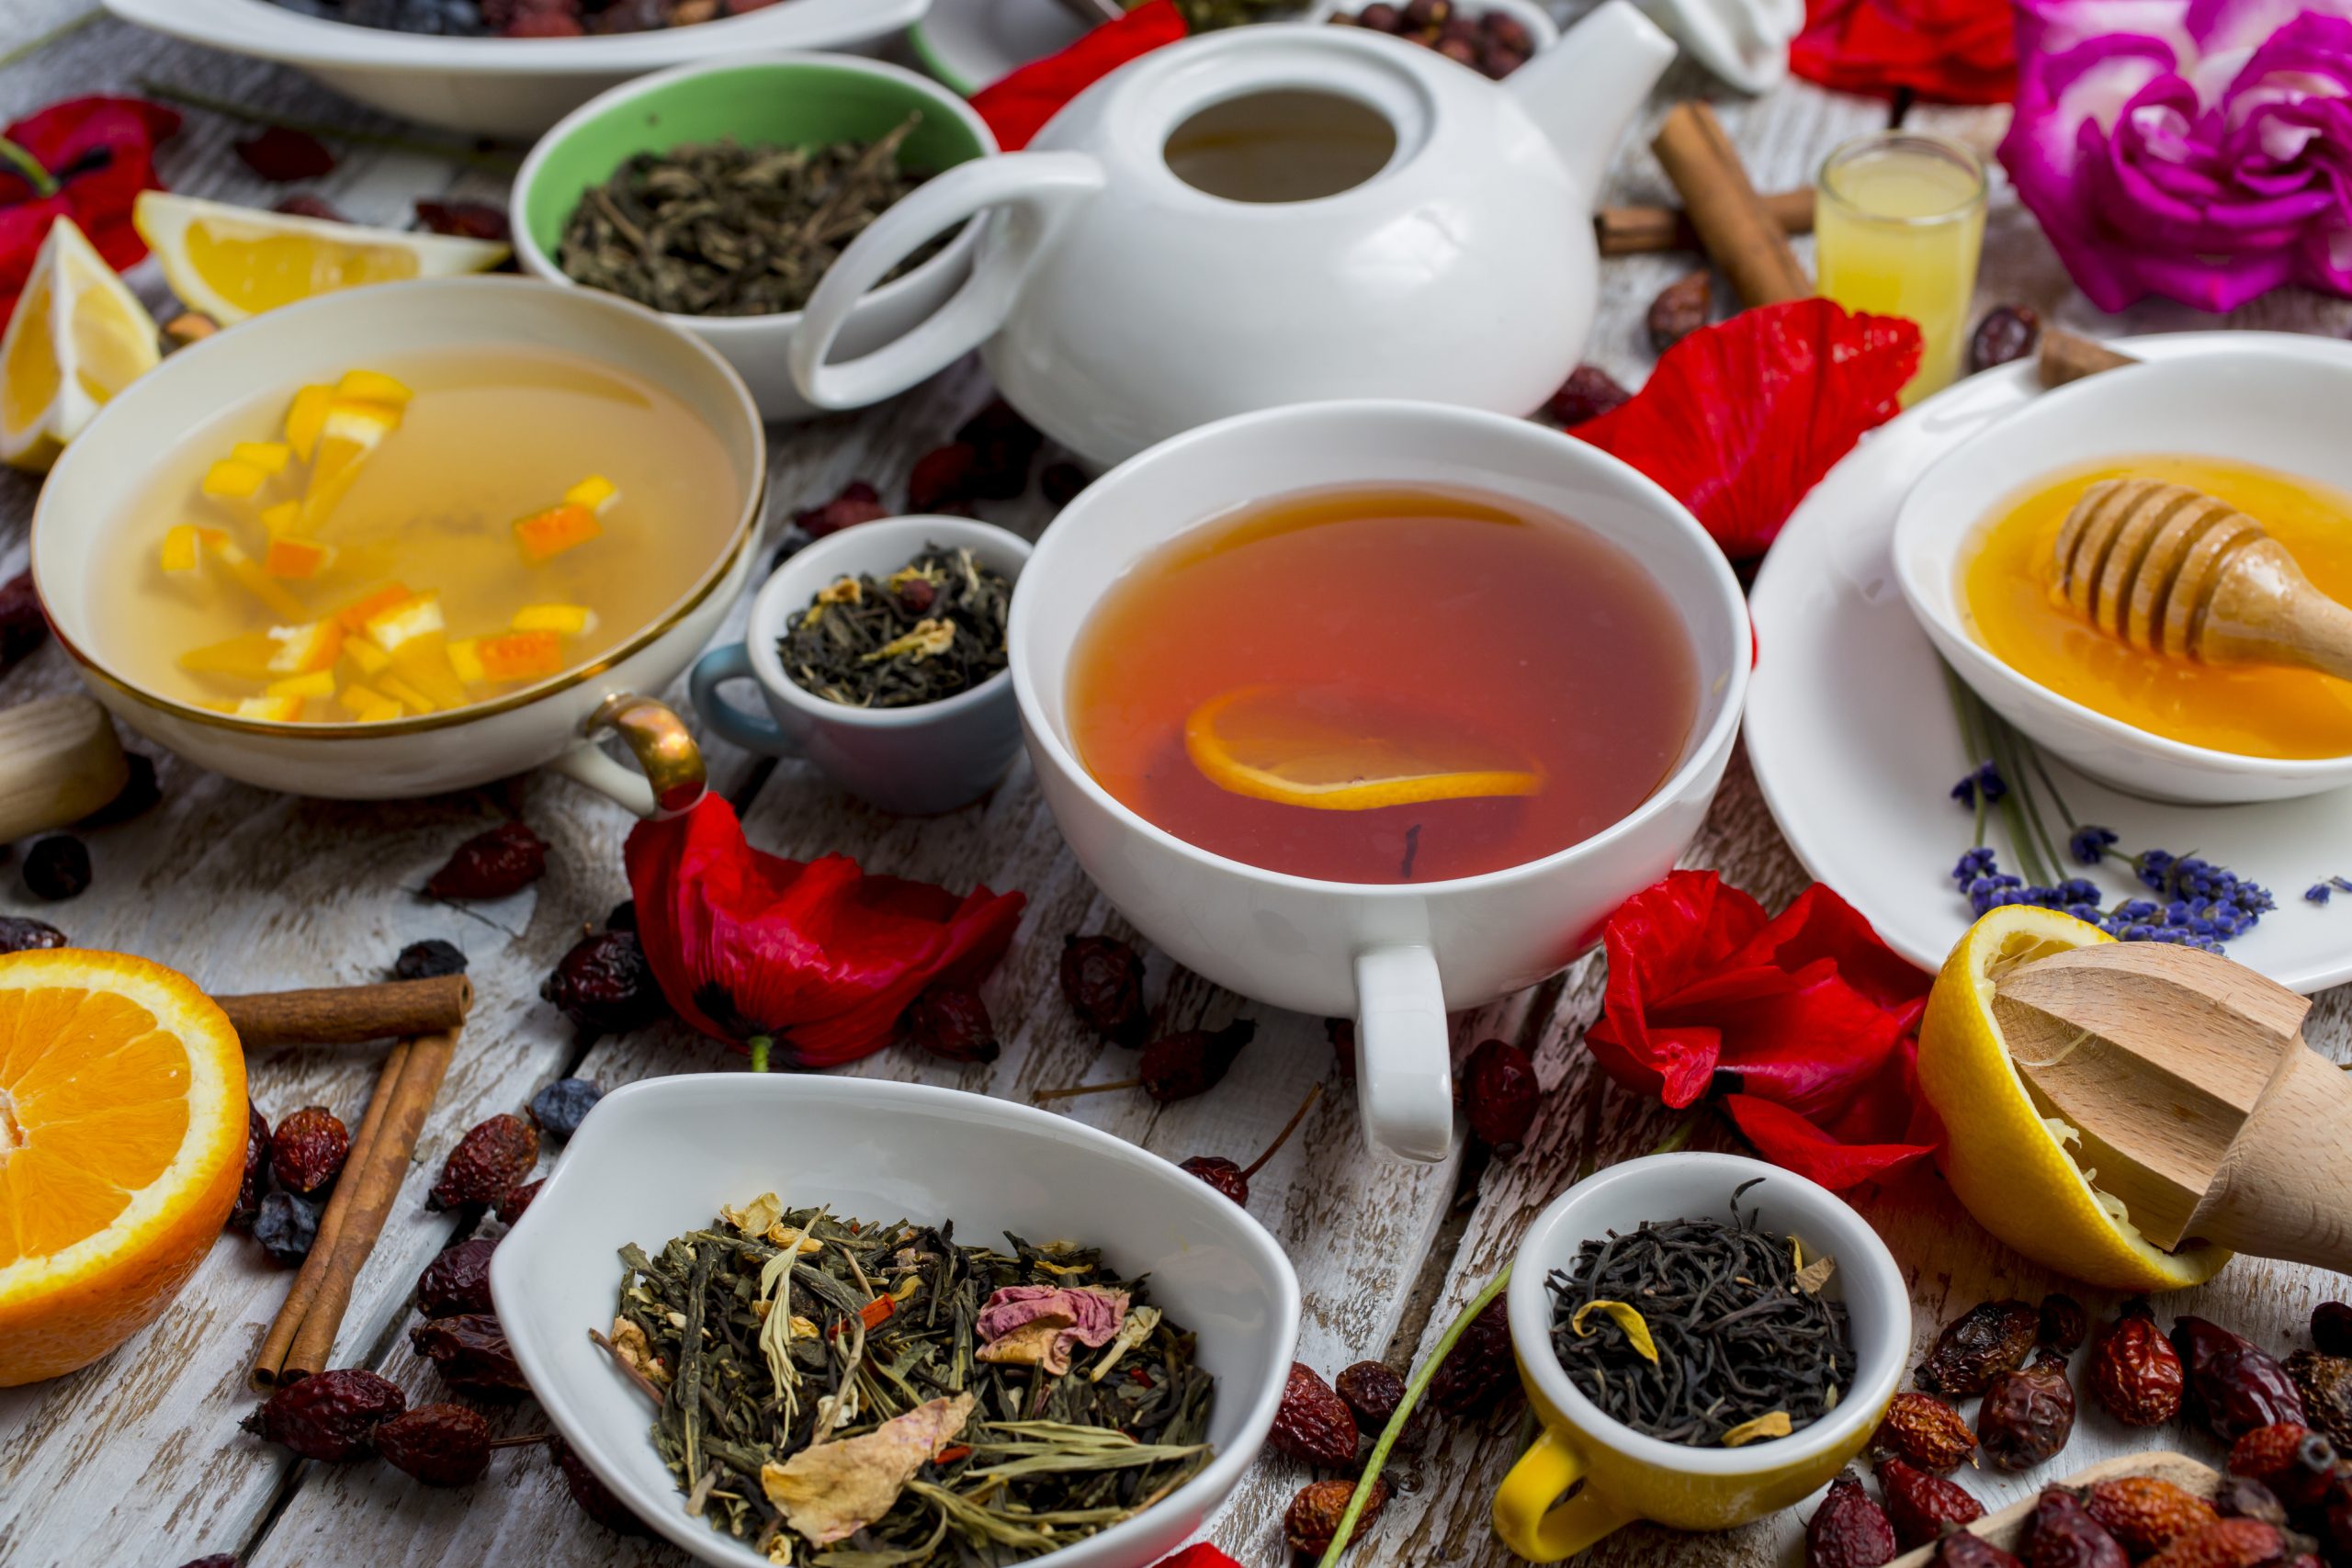 Types of Tea Blog Image. Image du blogue types de thé.